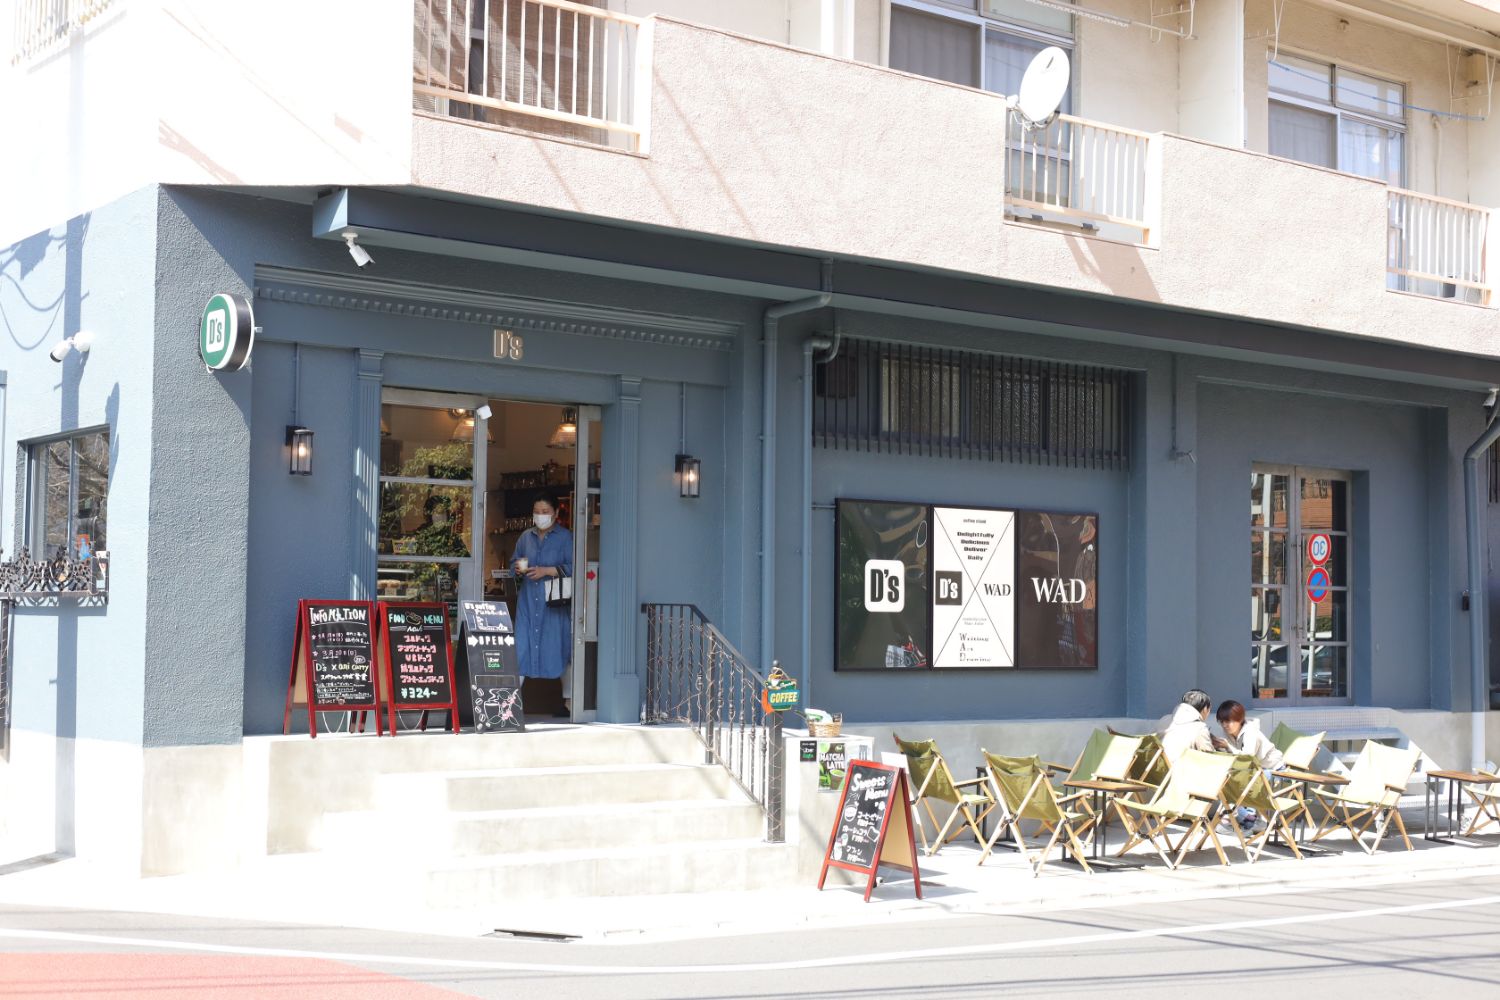 D’s Coffee　福岡で人気のmanucoffeの豆を使用。 併設されているWADは24時間利用可能なアトリエサービス。